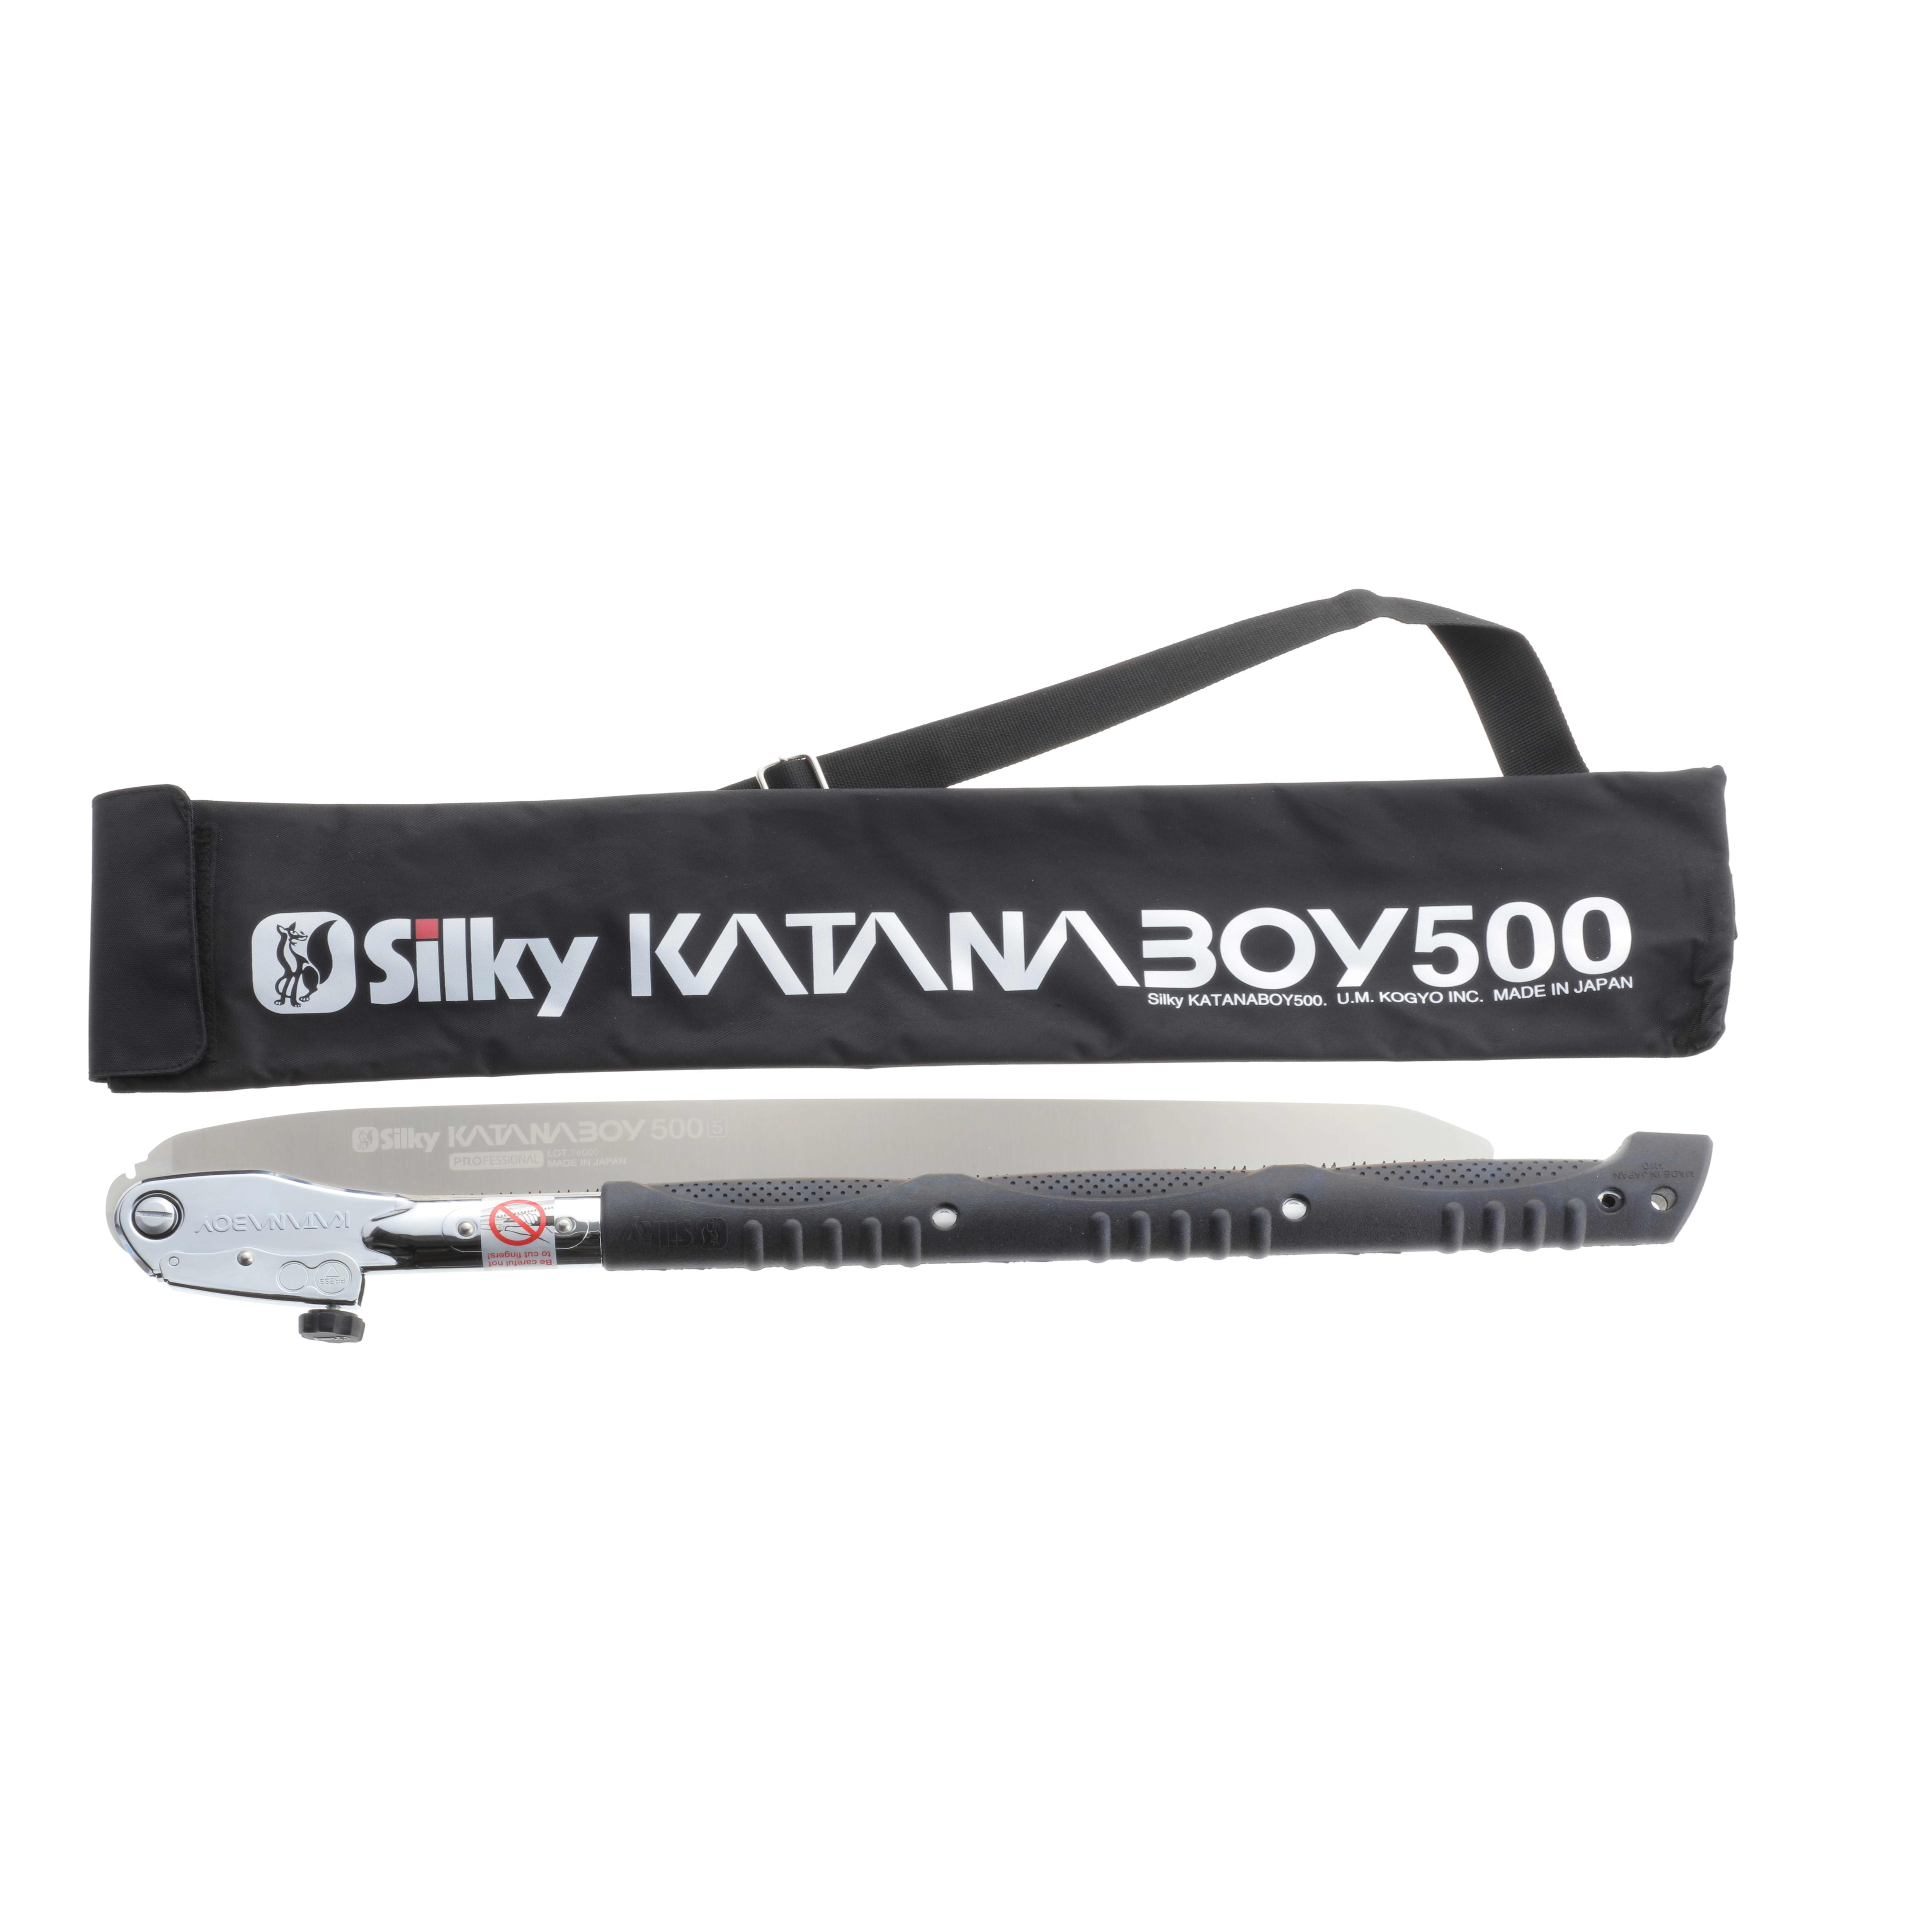 Silky® Katanaboy 500 Folding Saw